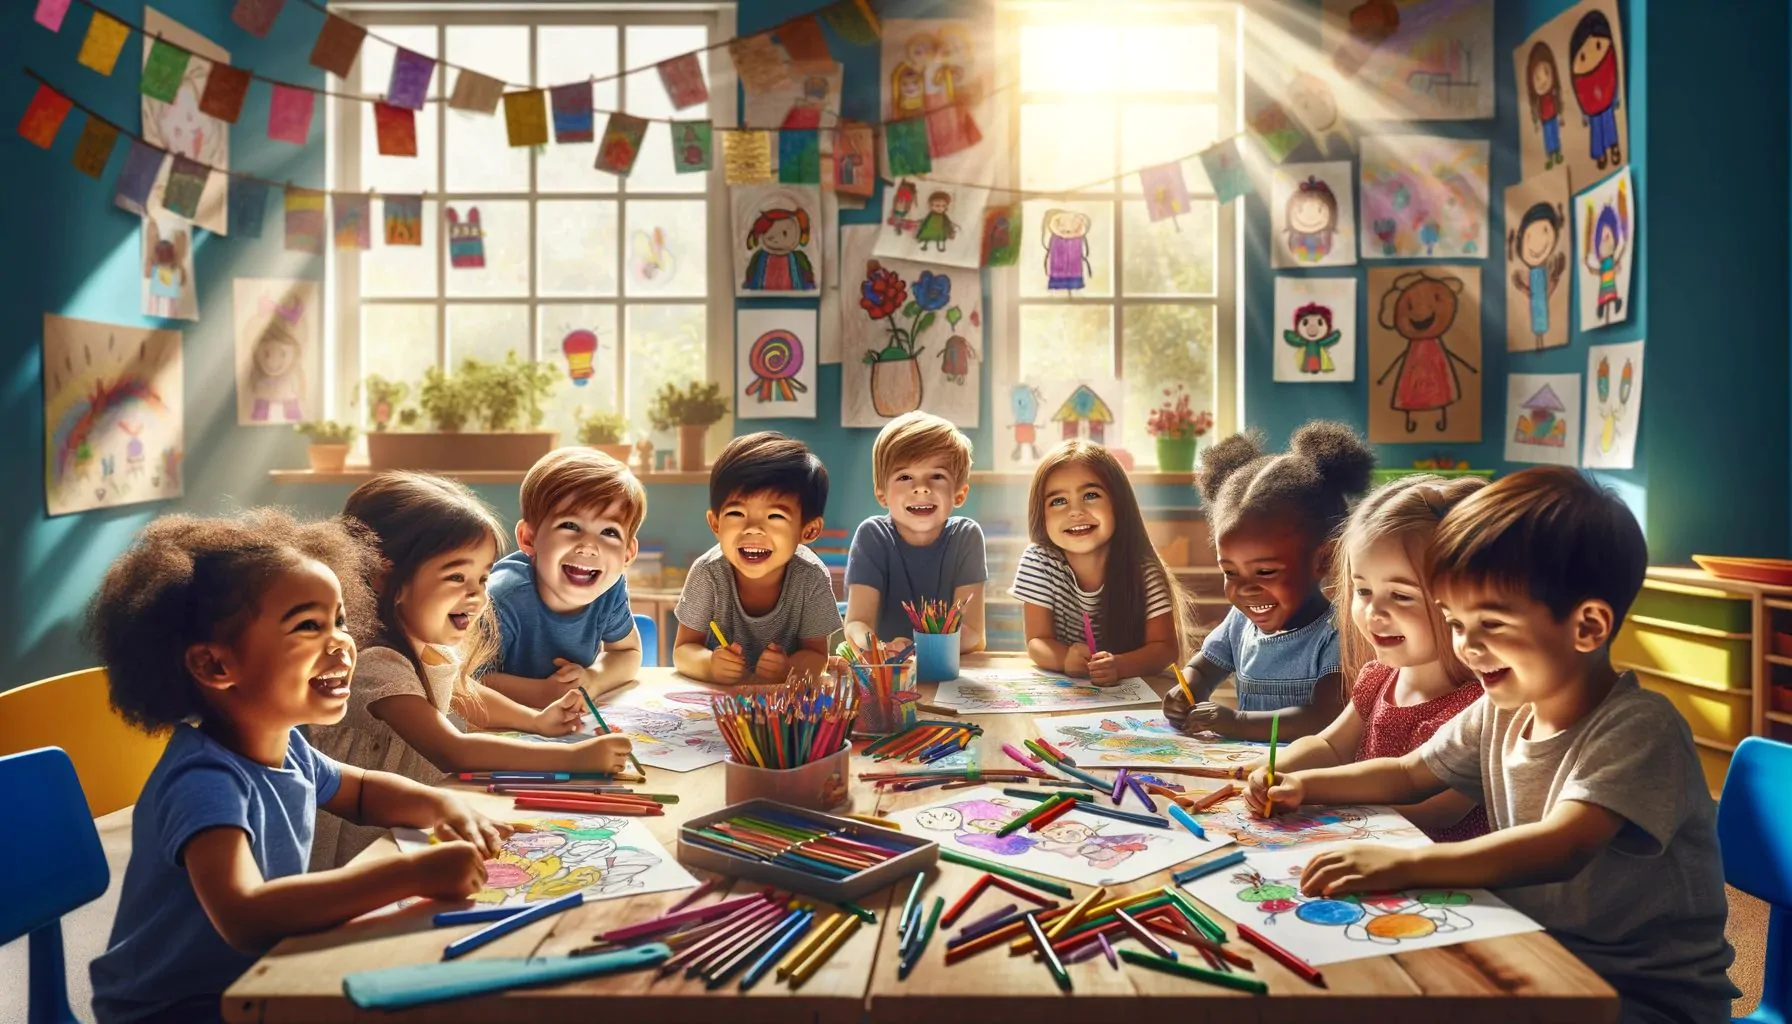 Çocuklar İçin Boyama Sayfalarının Faydaları - her yaş için sihirli bir dünya